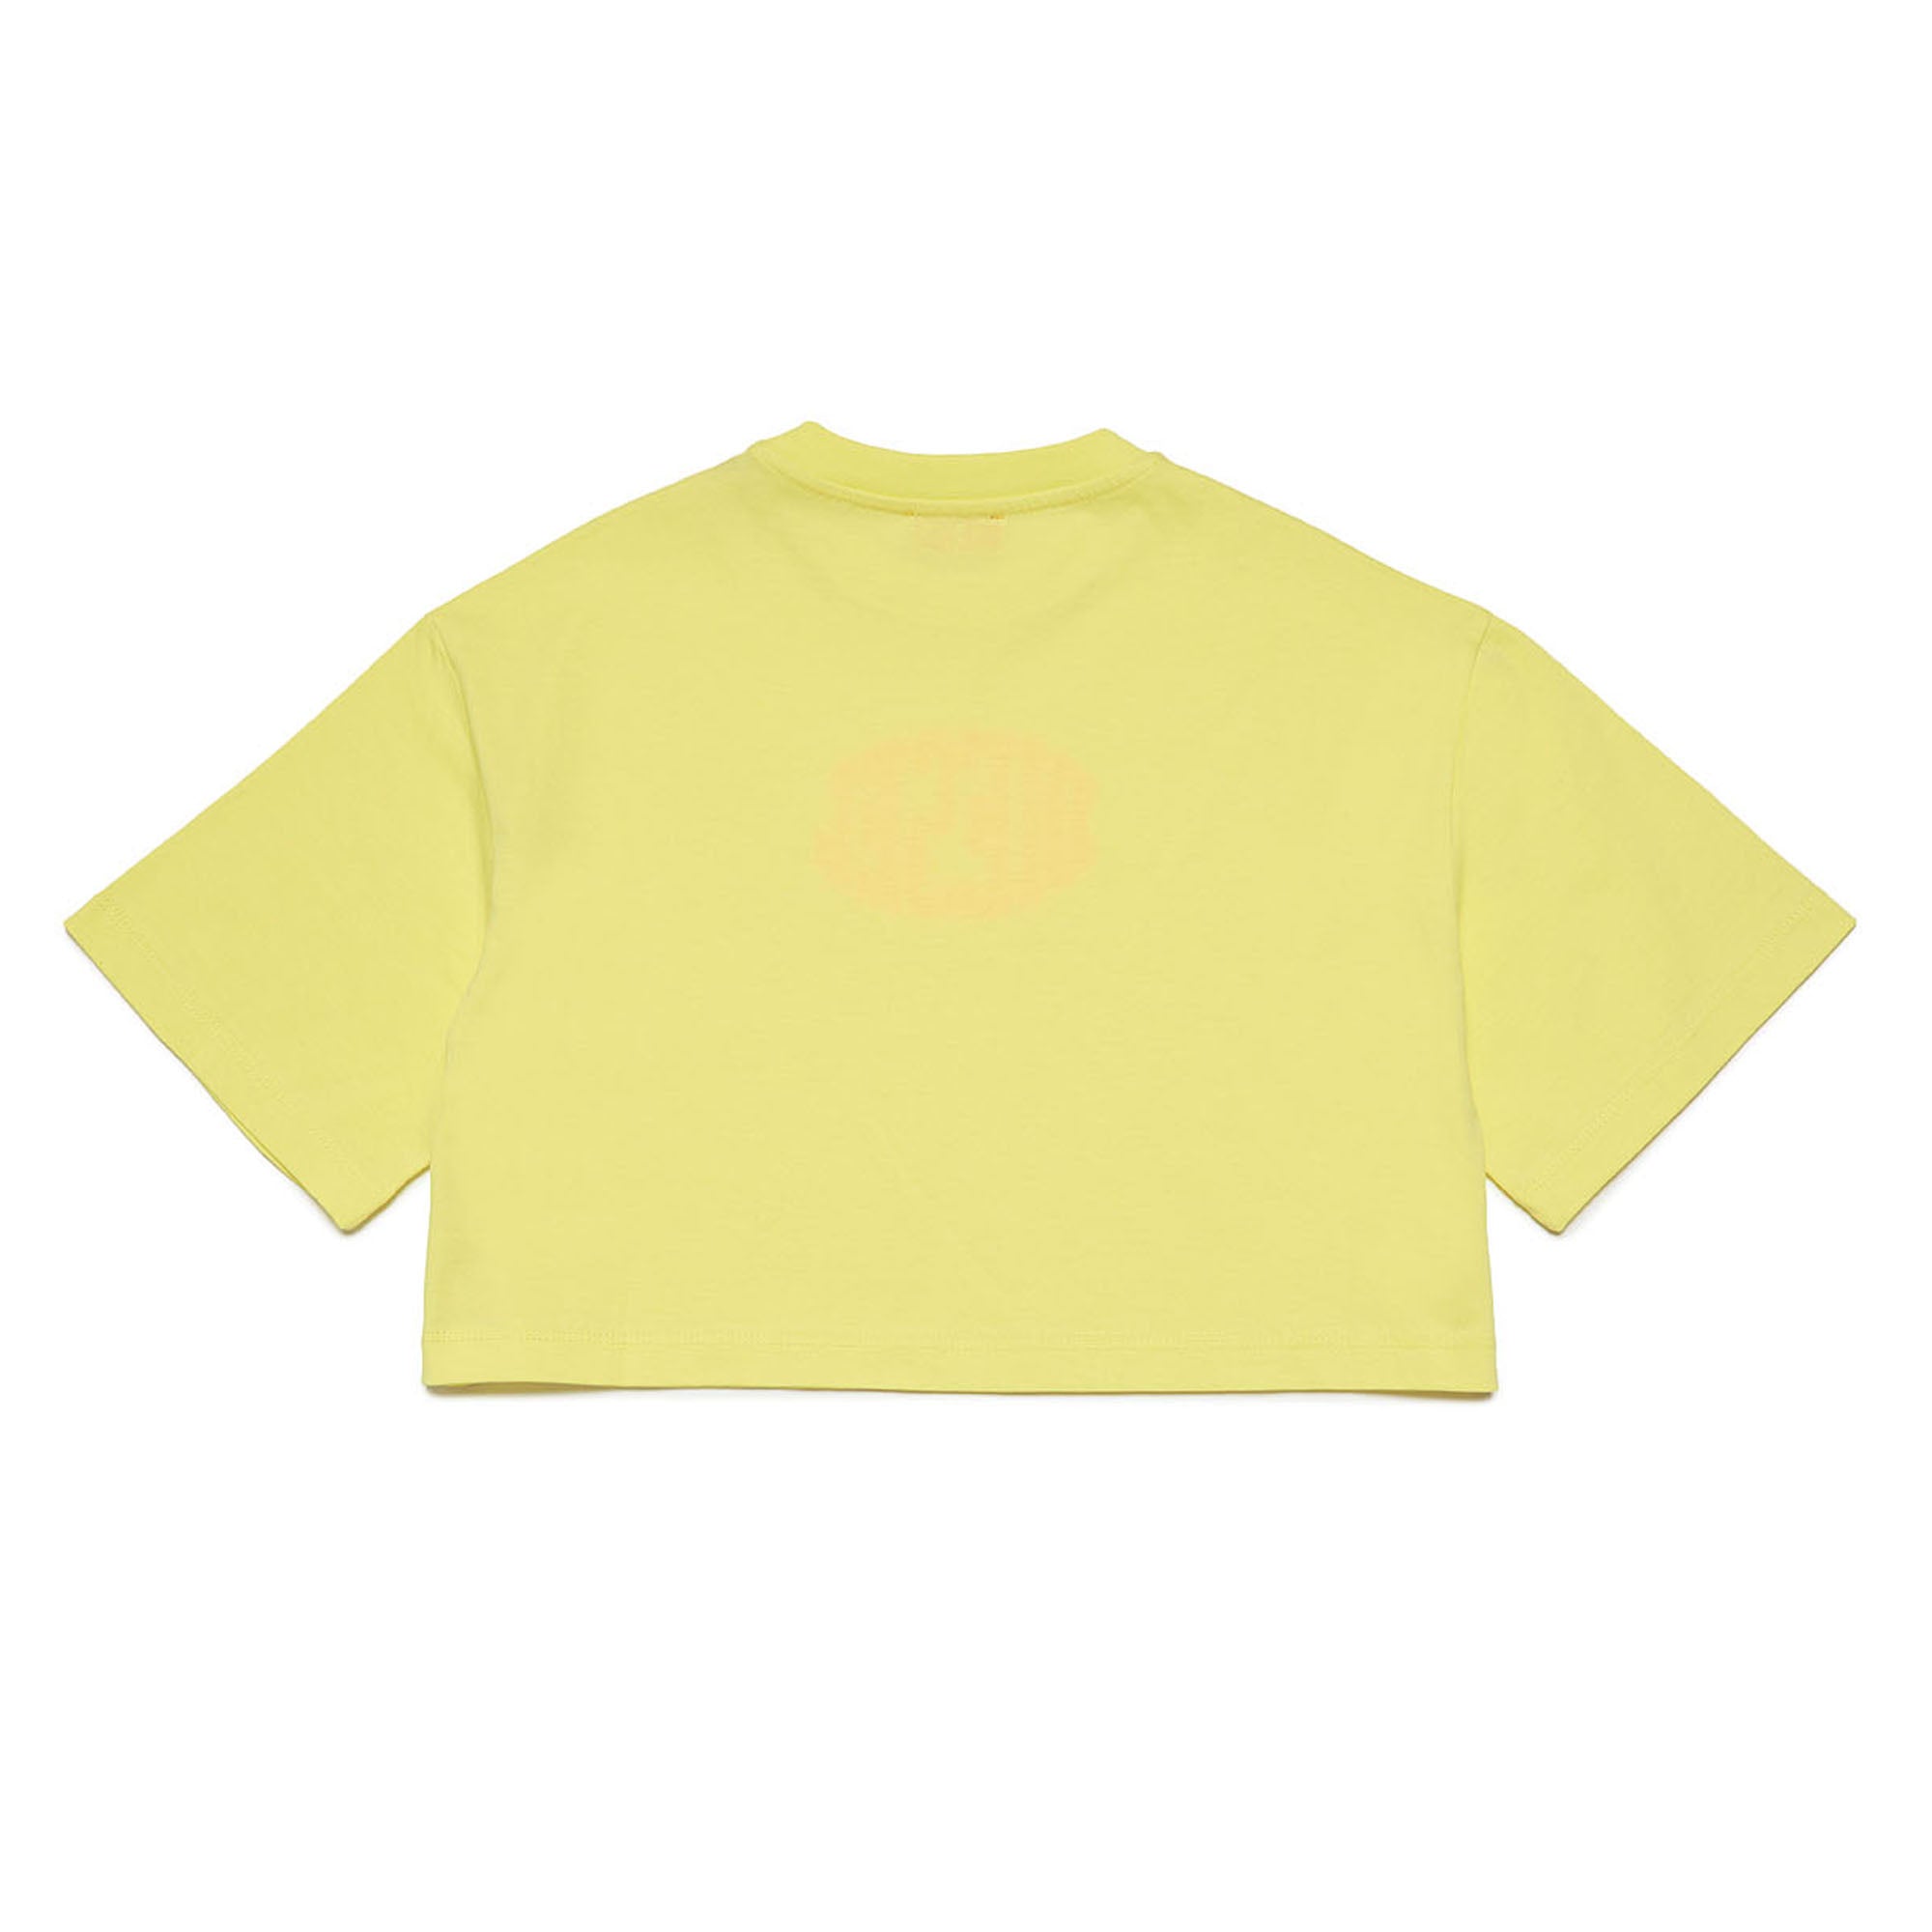 Diesel Tarki Yellow Cropped T-Shirt